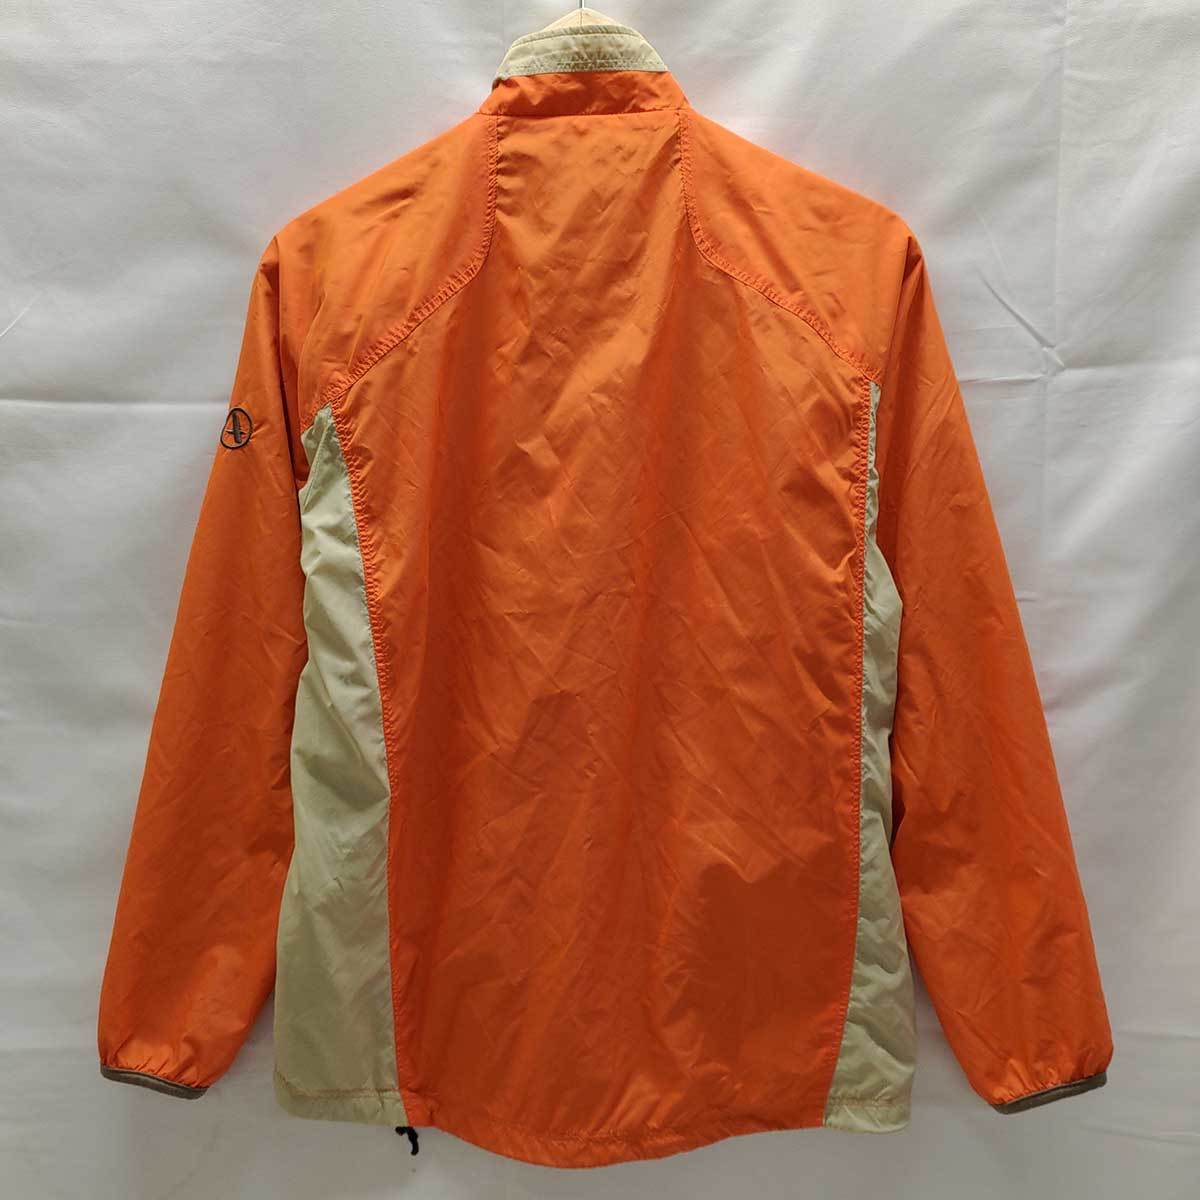 [ used ] Aigle nylon jacket reverse side mesh XS orange x beige 8504-11451 lady's AIGLE outer 